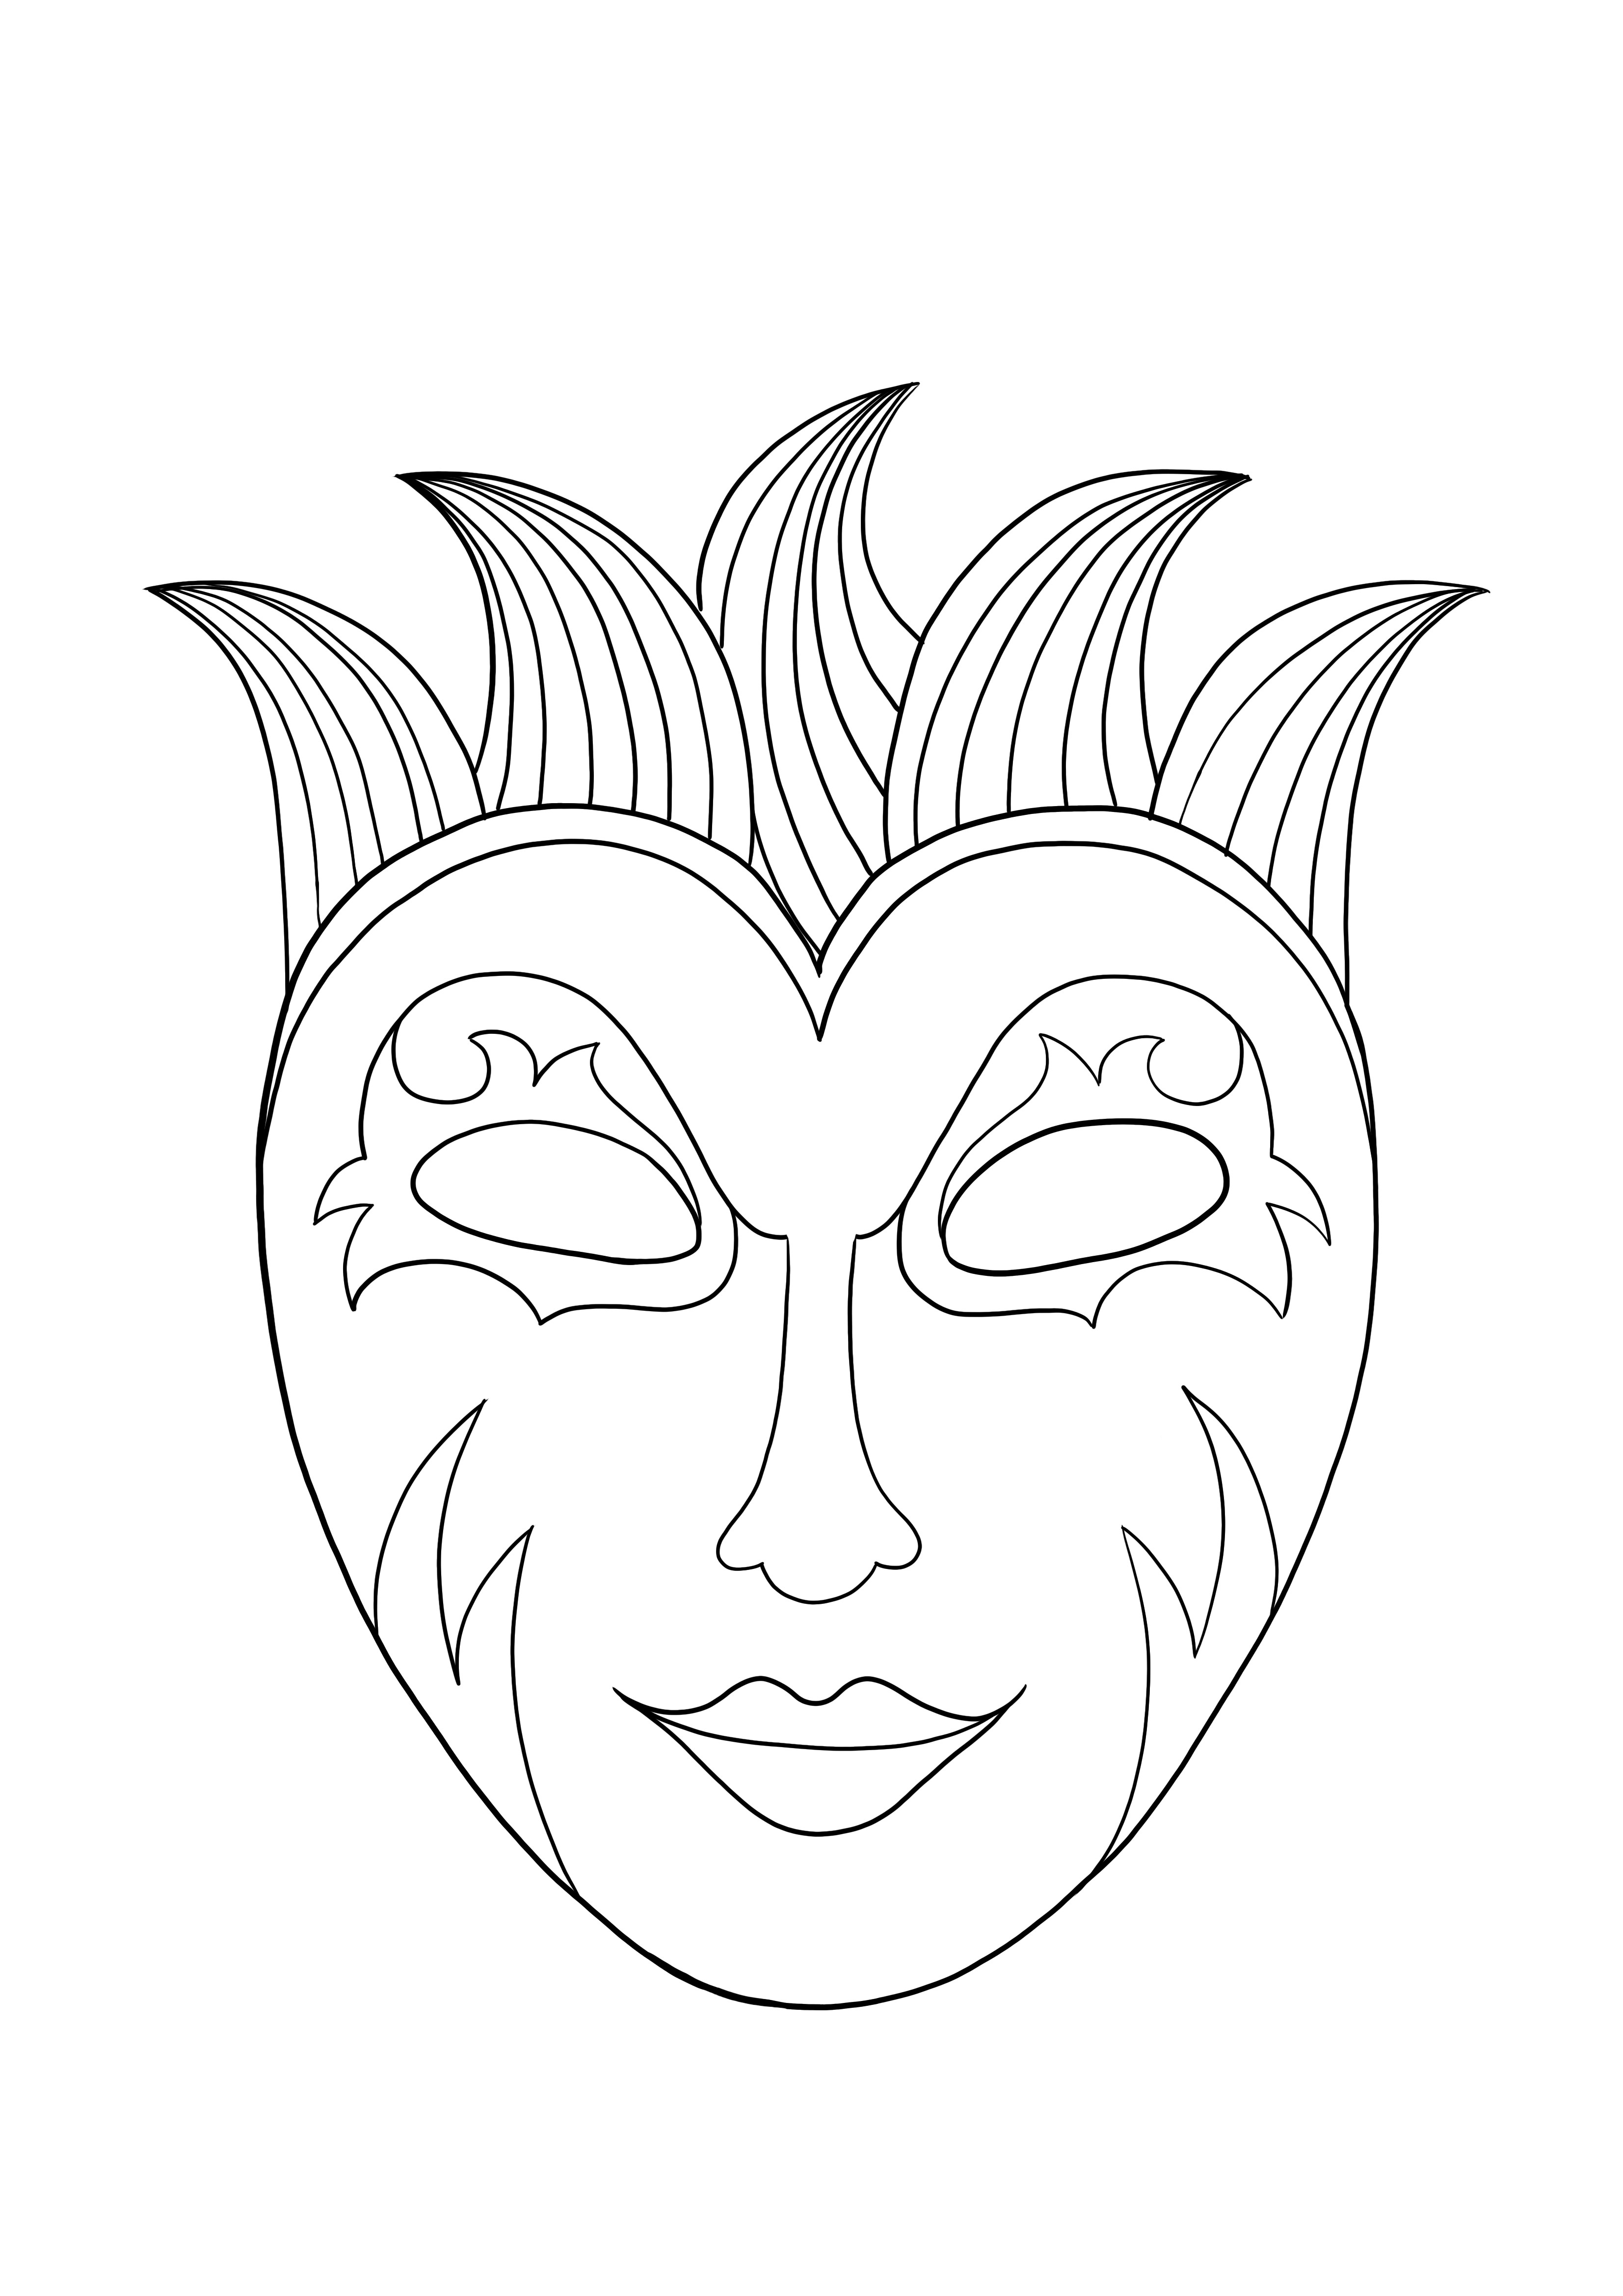 Máscara de Mardi Gras para descargar y colorear gratis